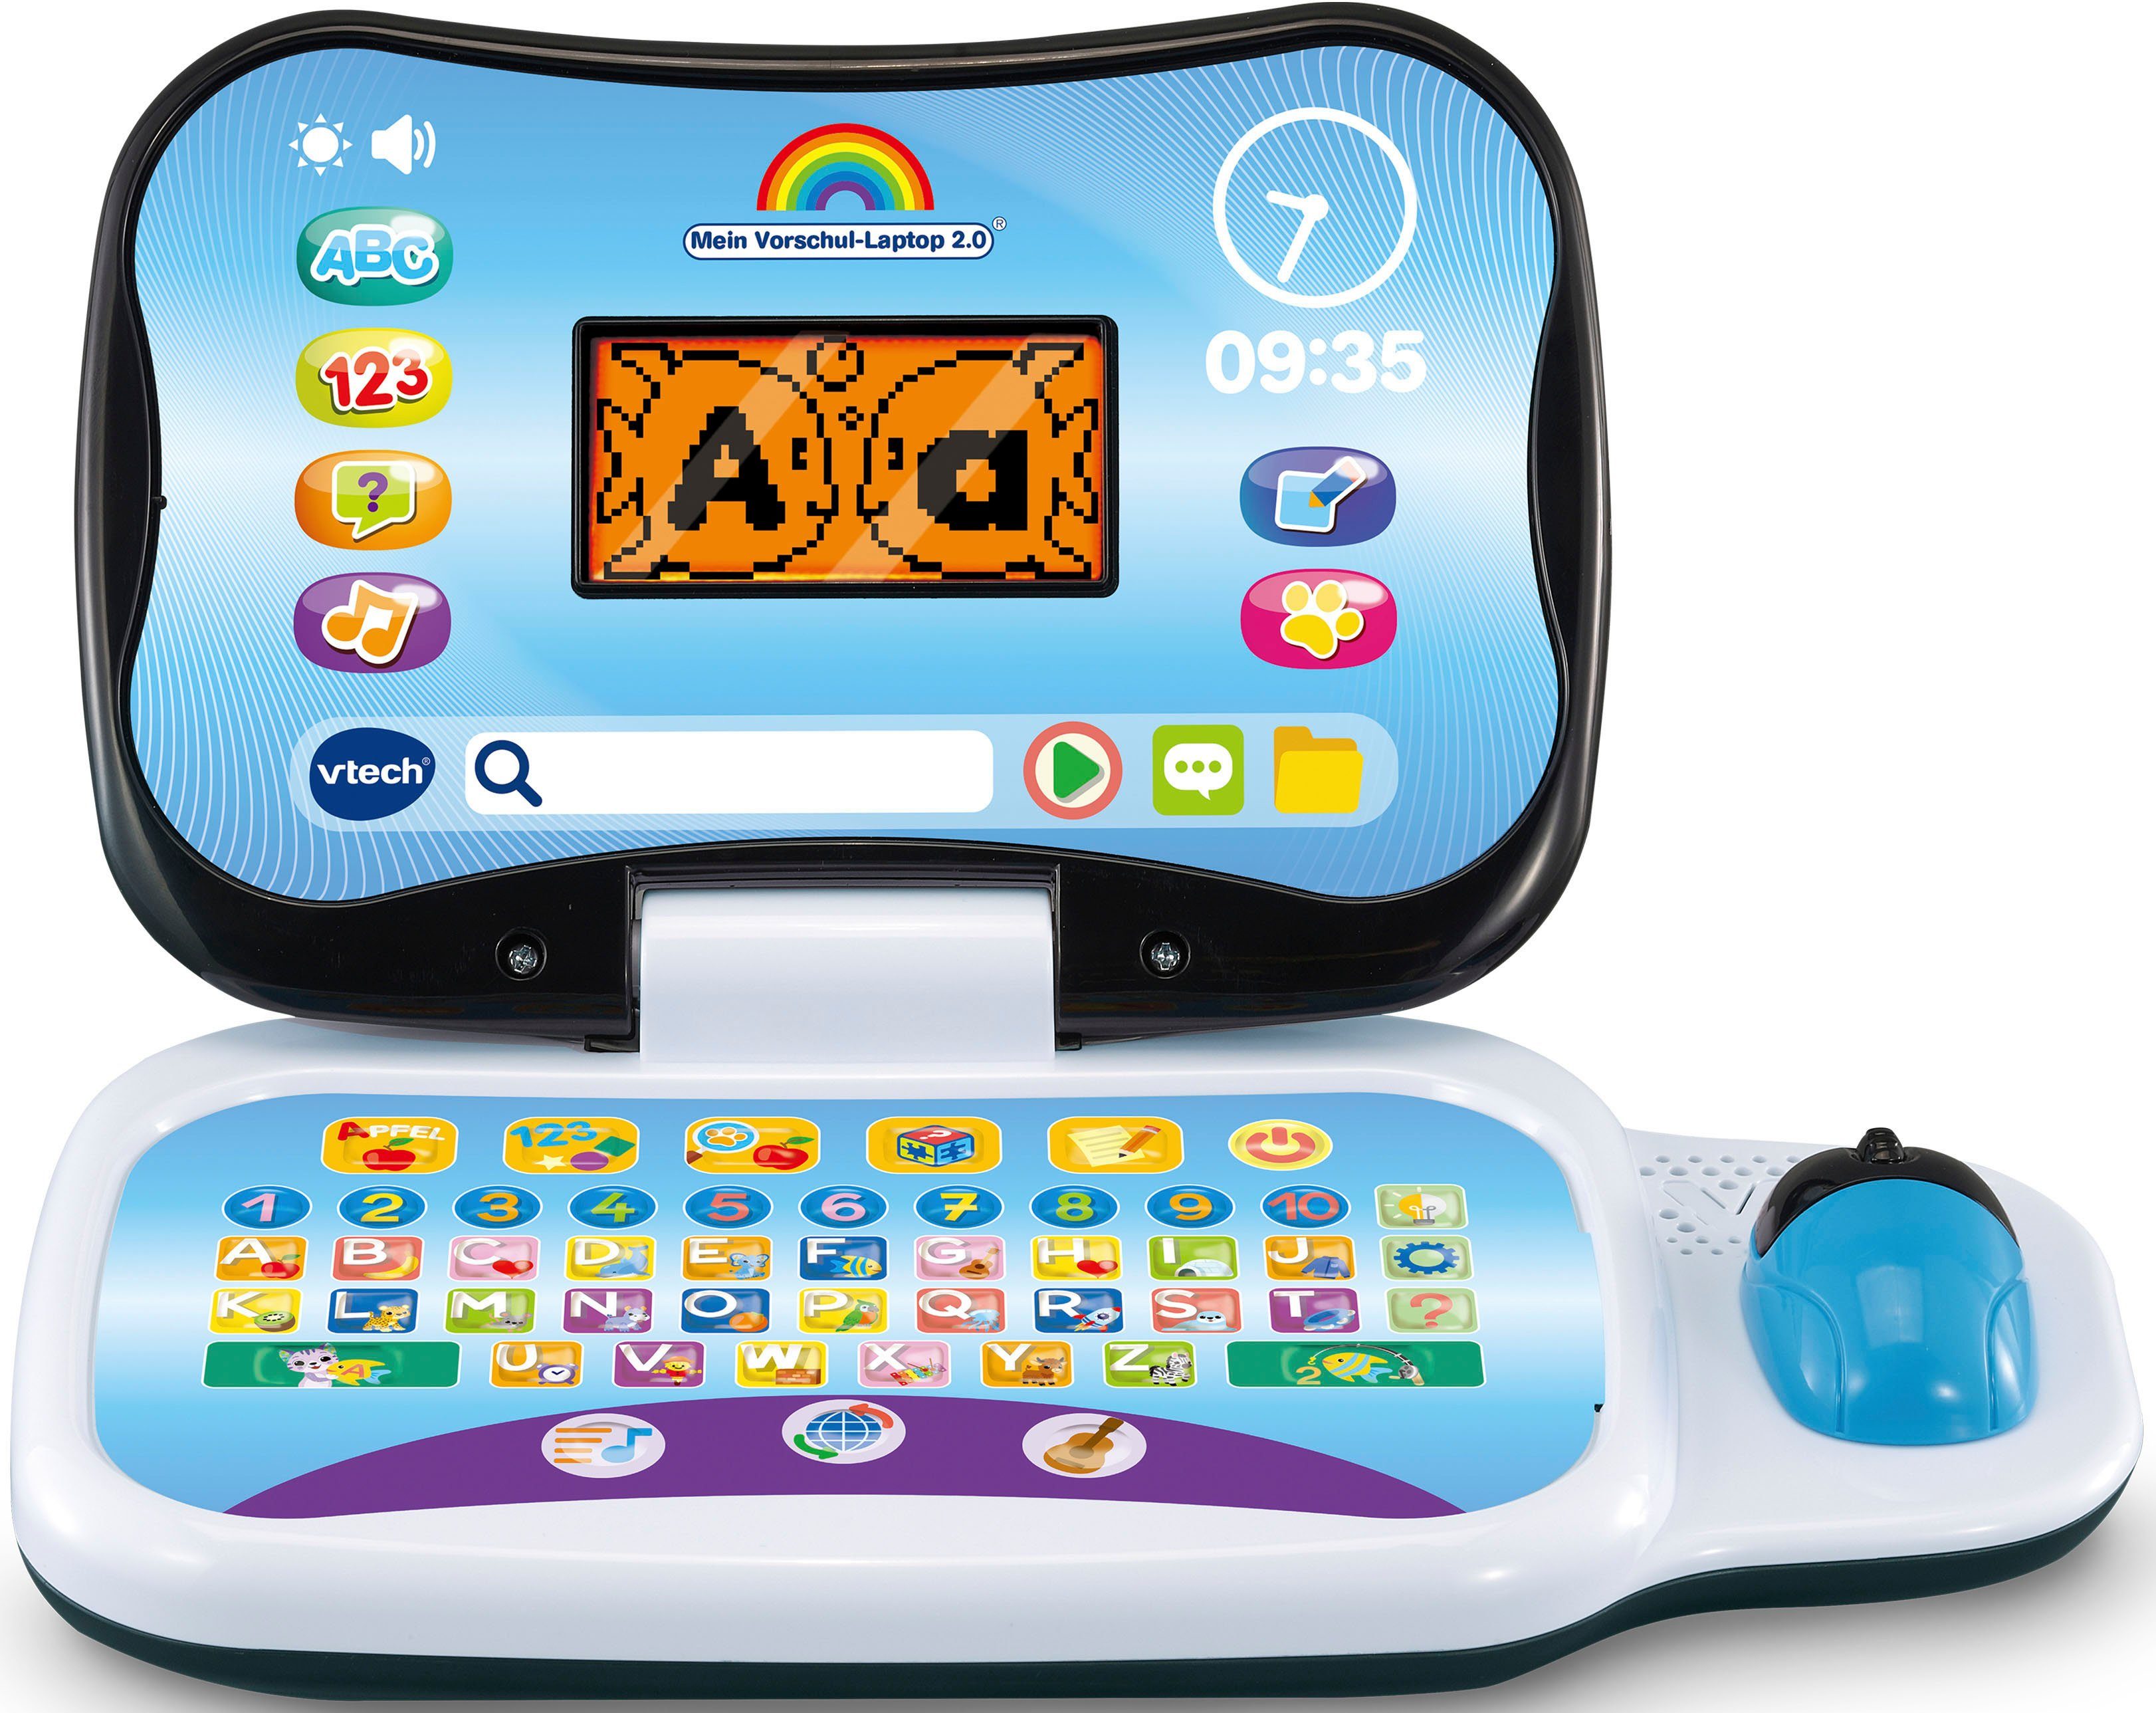 Vtech® Kindercomputer 2.0, Vorschul-Laptop Mein bunt